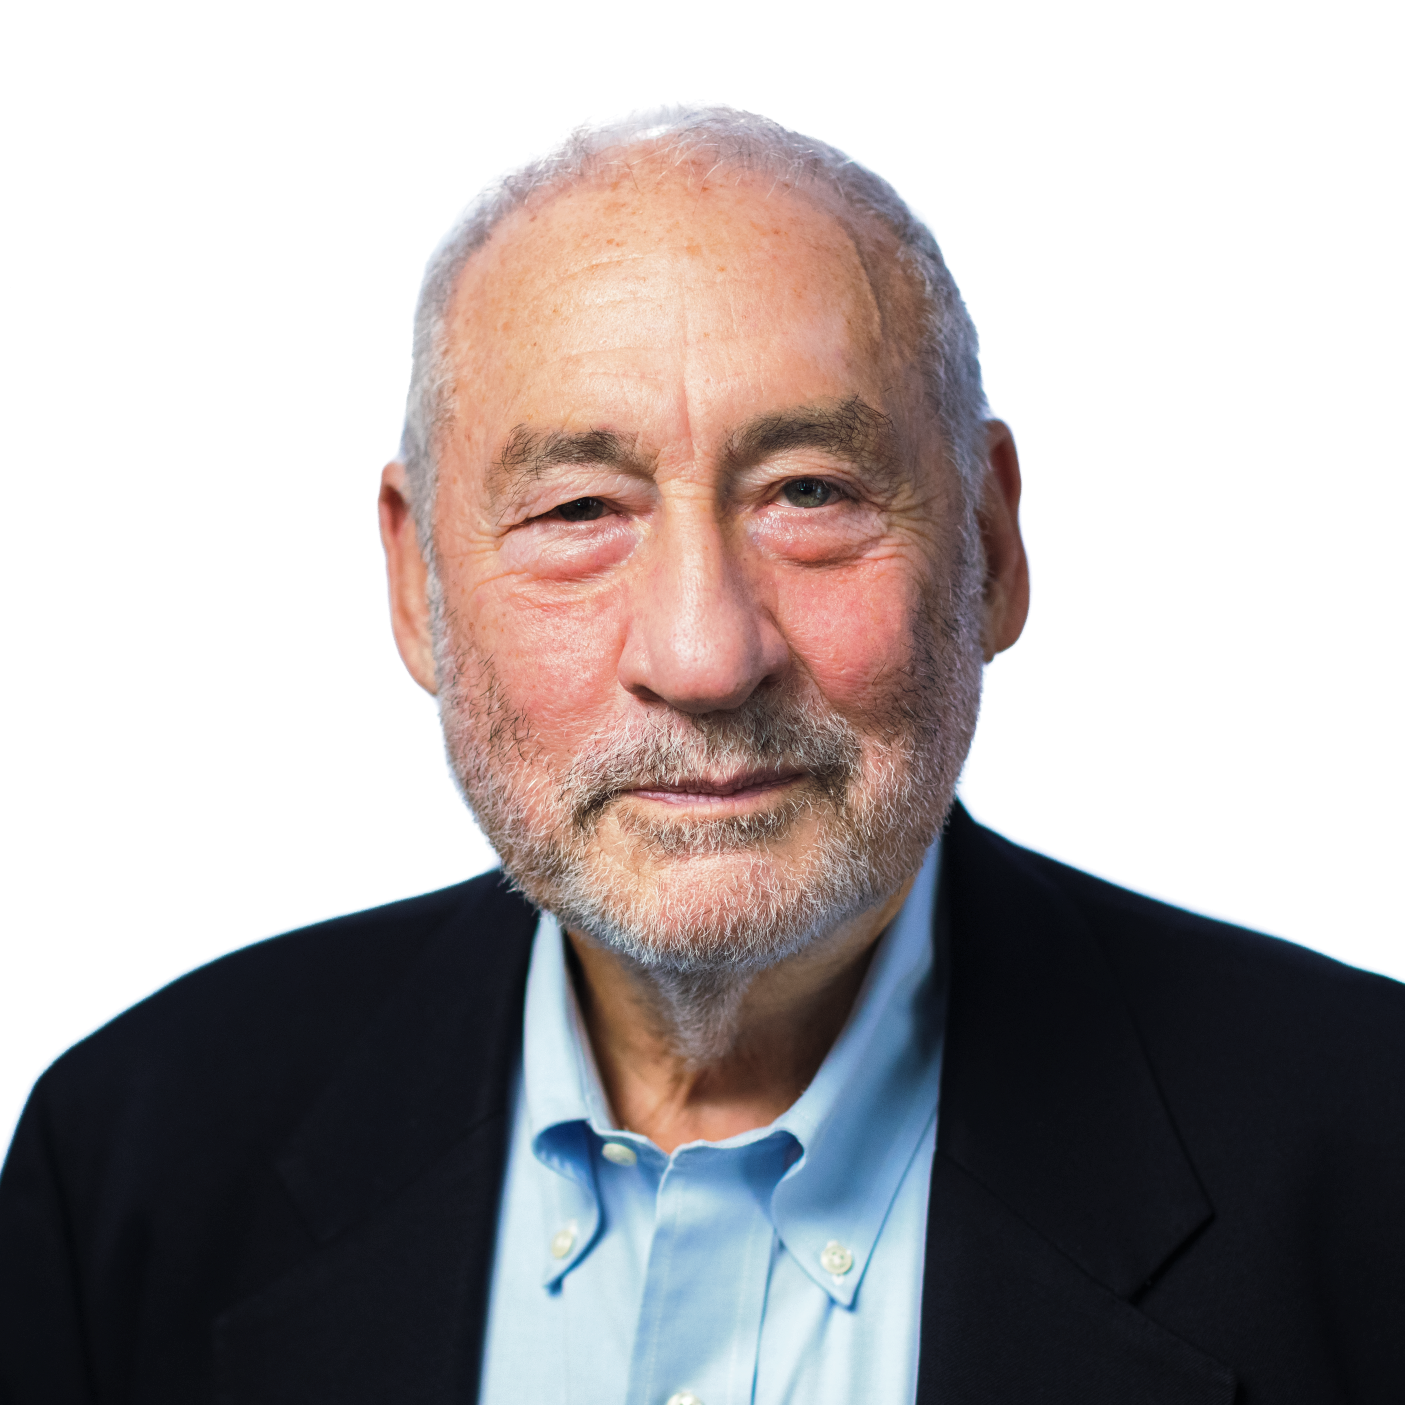 Photo of Joseph E. Stiglitz